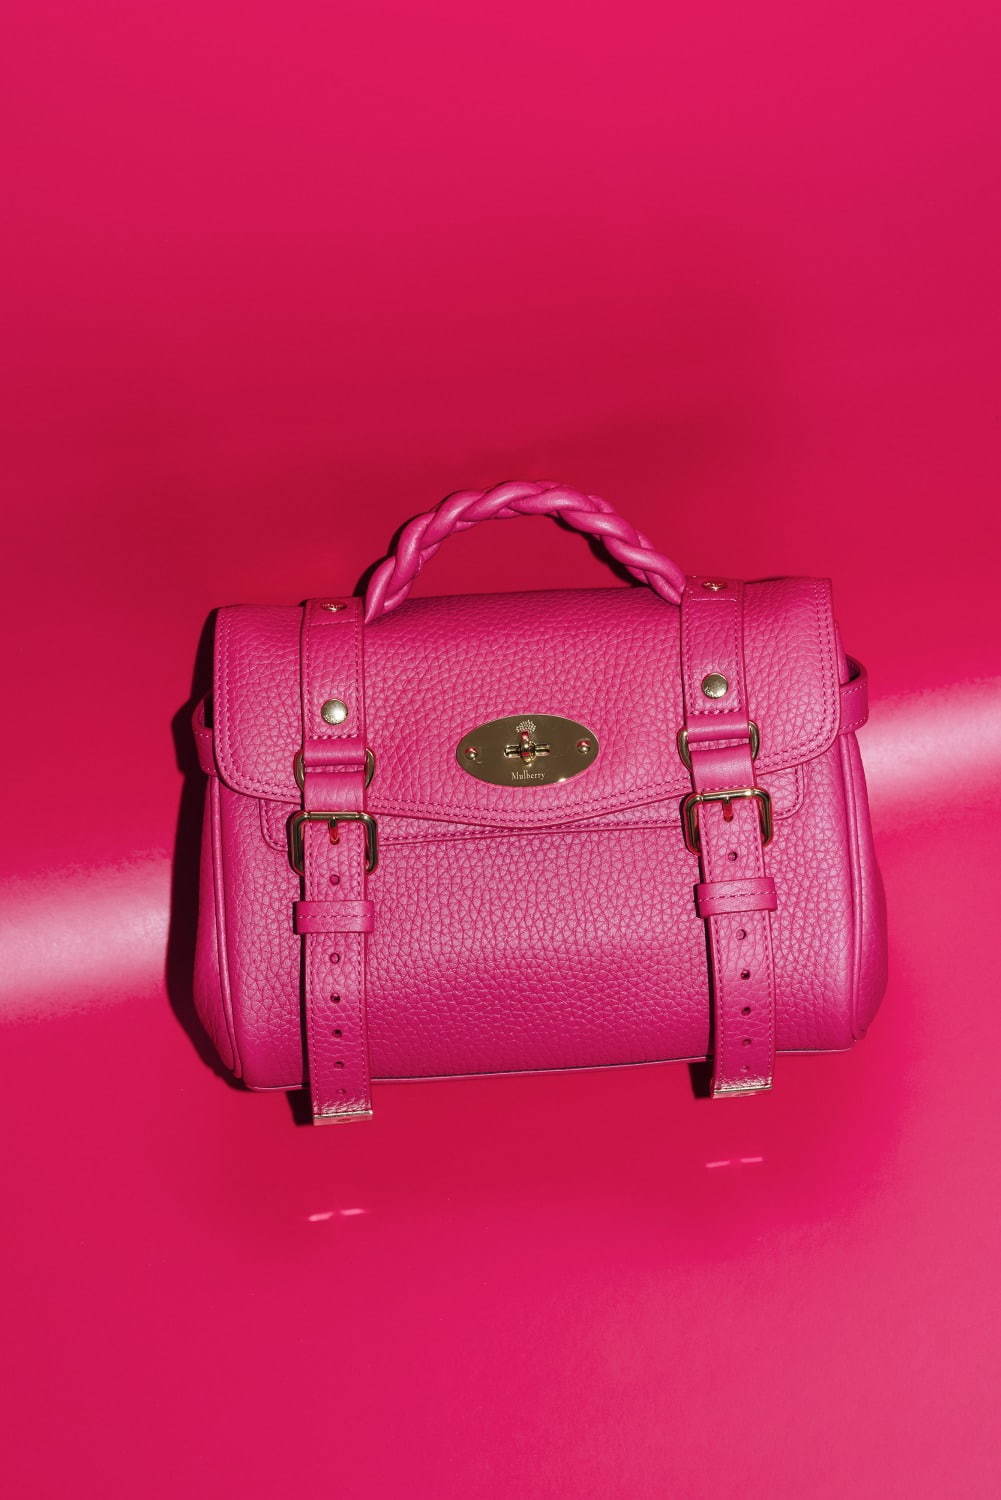 マルベリー名作バッグが“ミニサイズ”で復刻、旅行鞄イメージの 